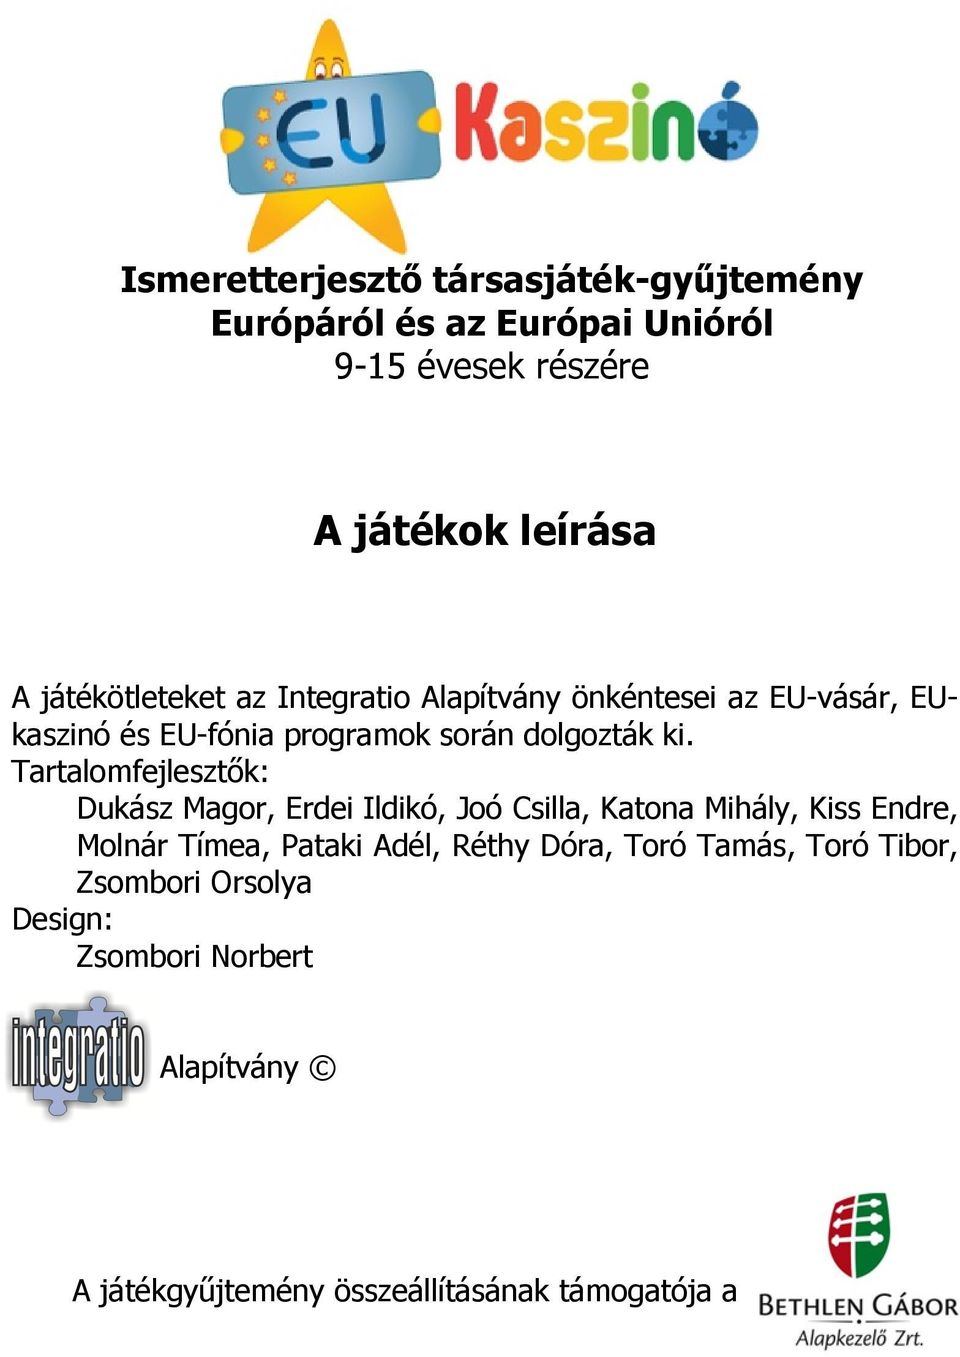 Tartalomfejlesztők: Dukász Magor, Erdei Ildikó, Joó Csilla, Katona Mihály, Kiss Endre, Molnár Tímea, Pataki Adél, Réthy